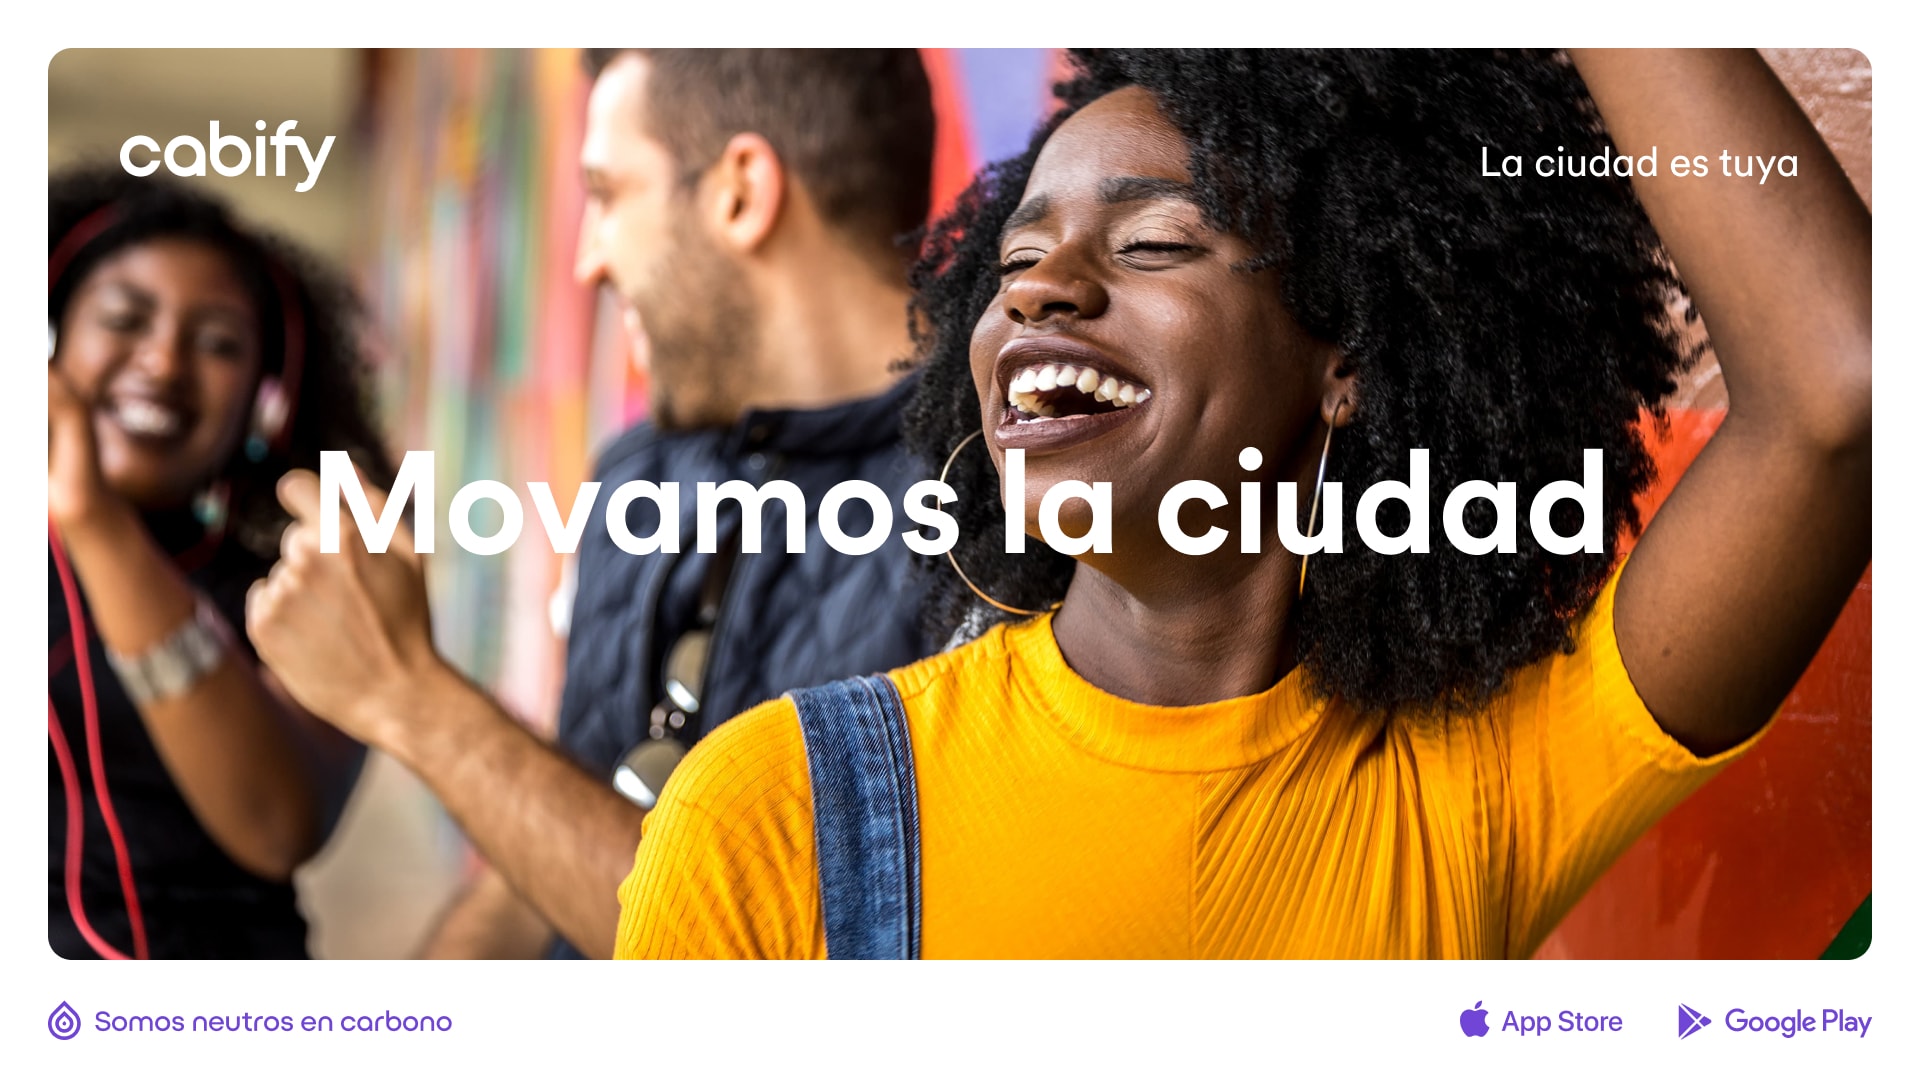 Un anuncio con la imagen de una mujer contenta y el texto "Movamos la ciudad"